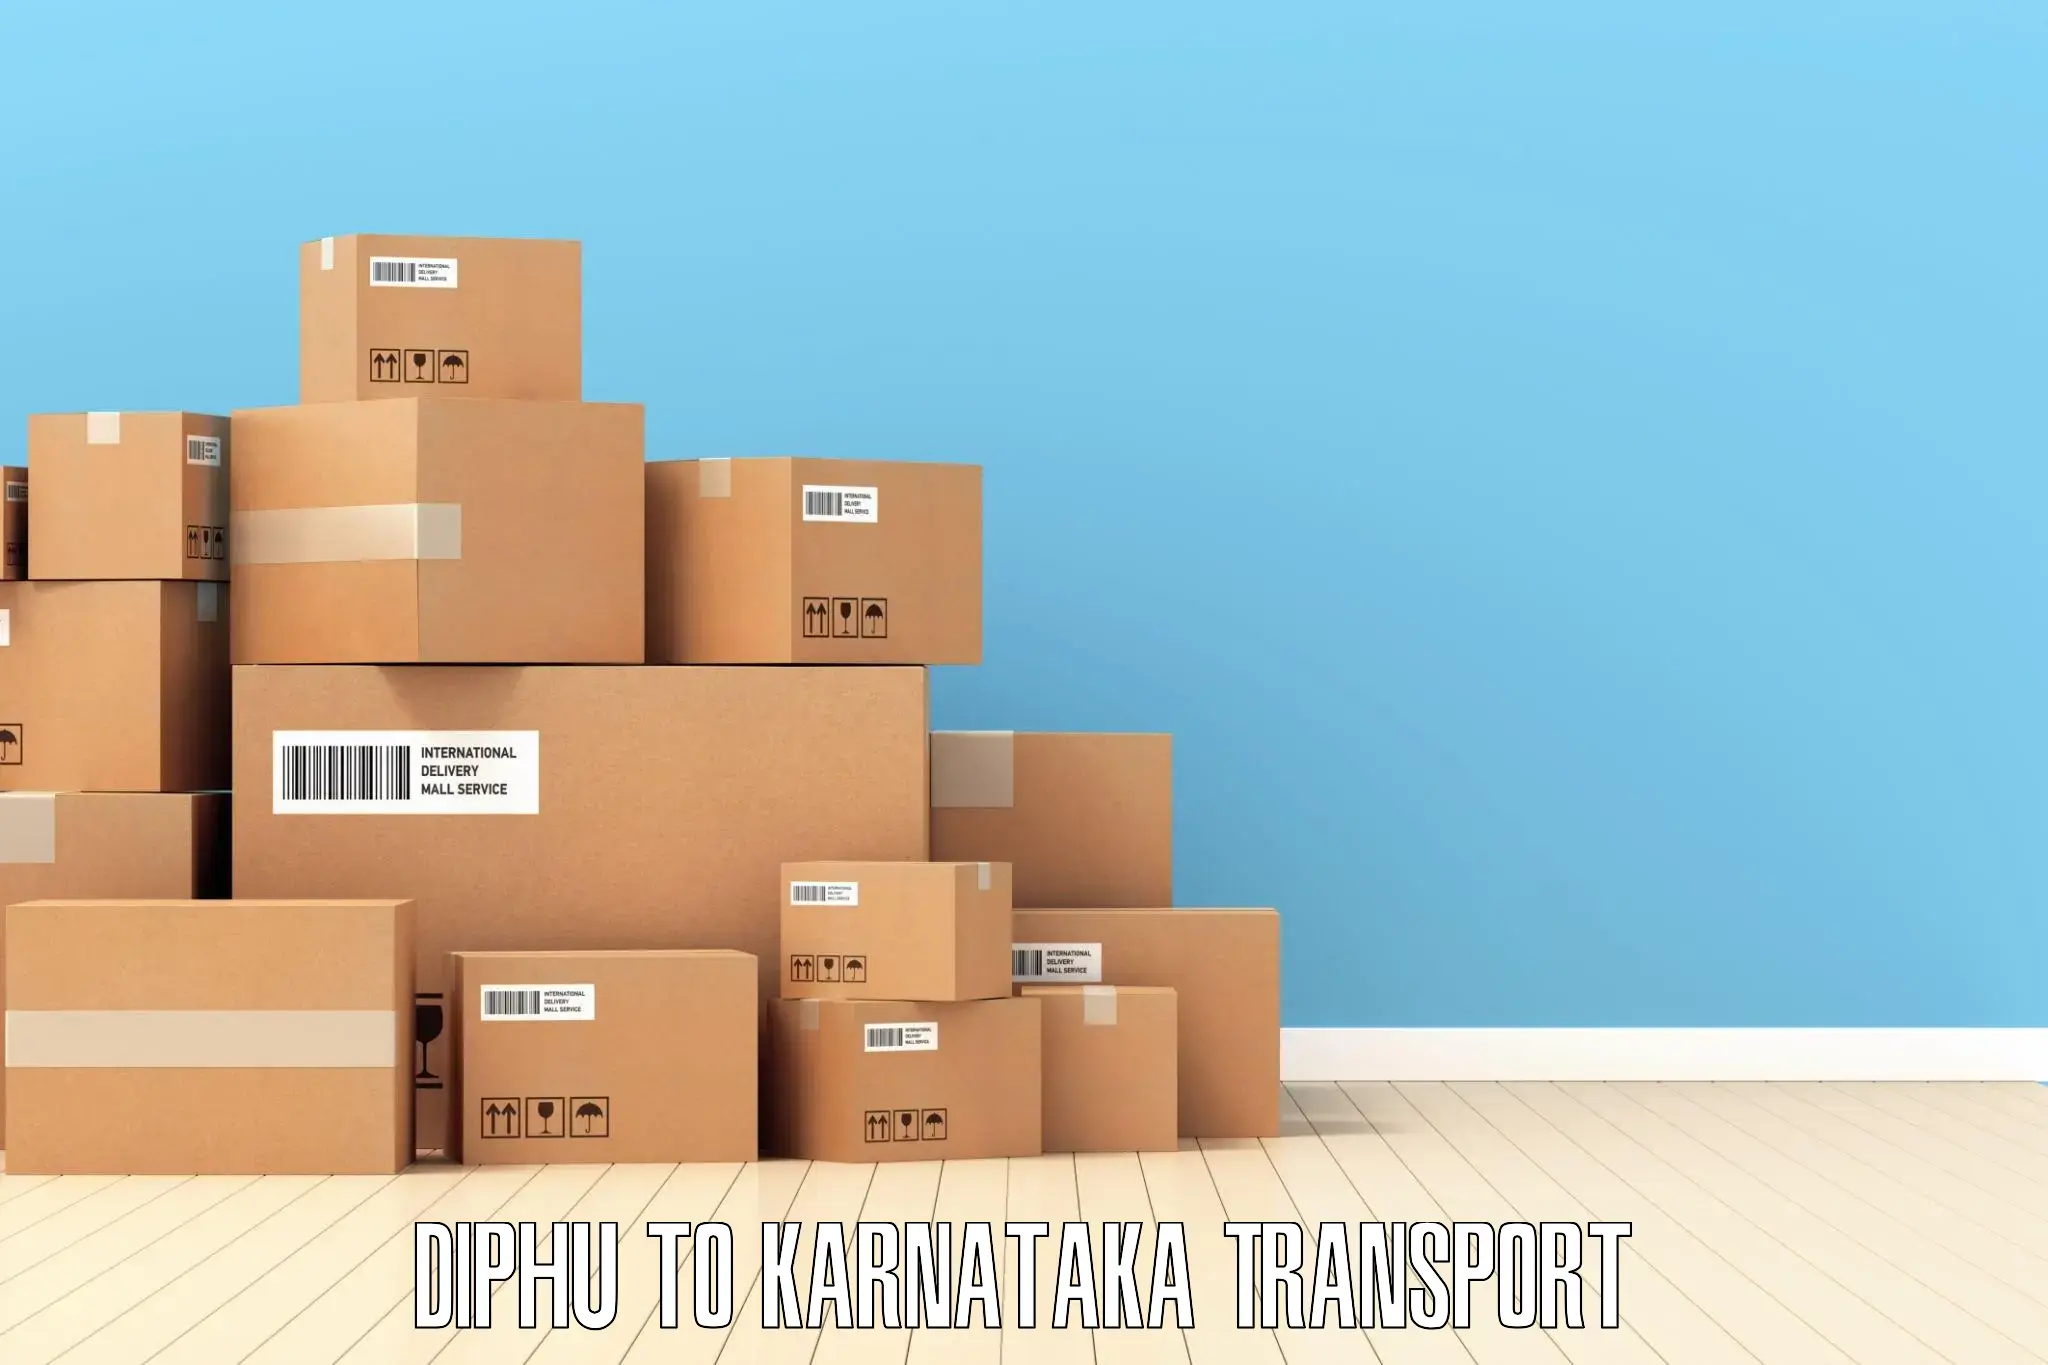 Commercial transport service Diphu to Karkala